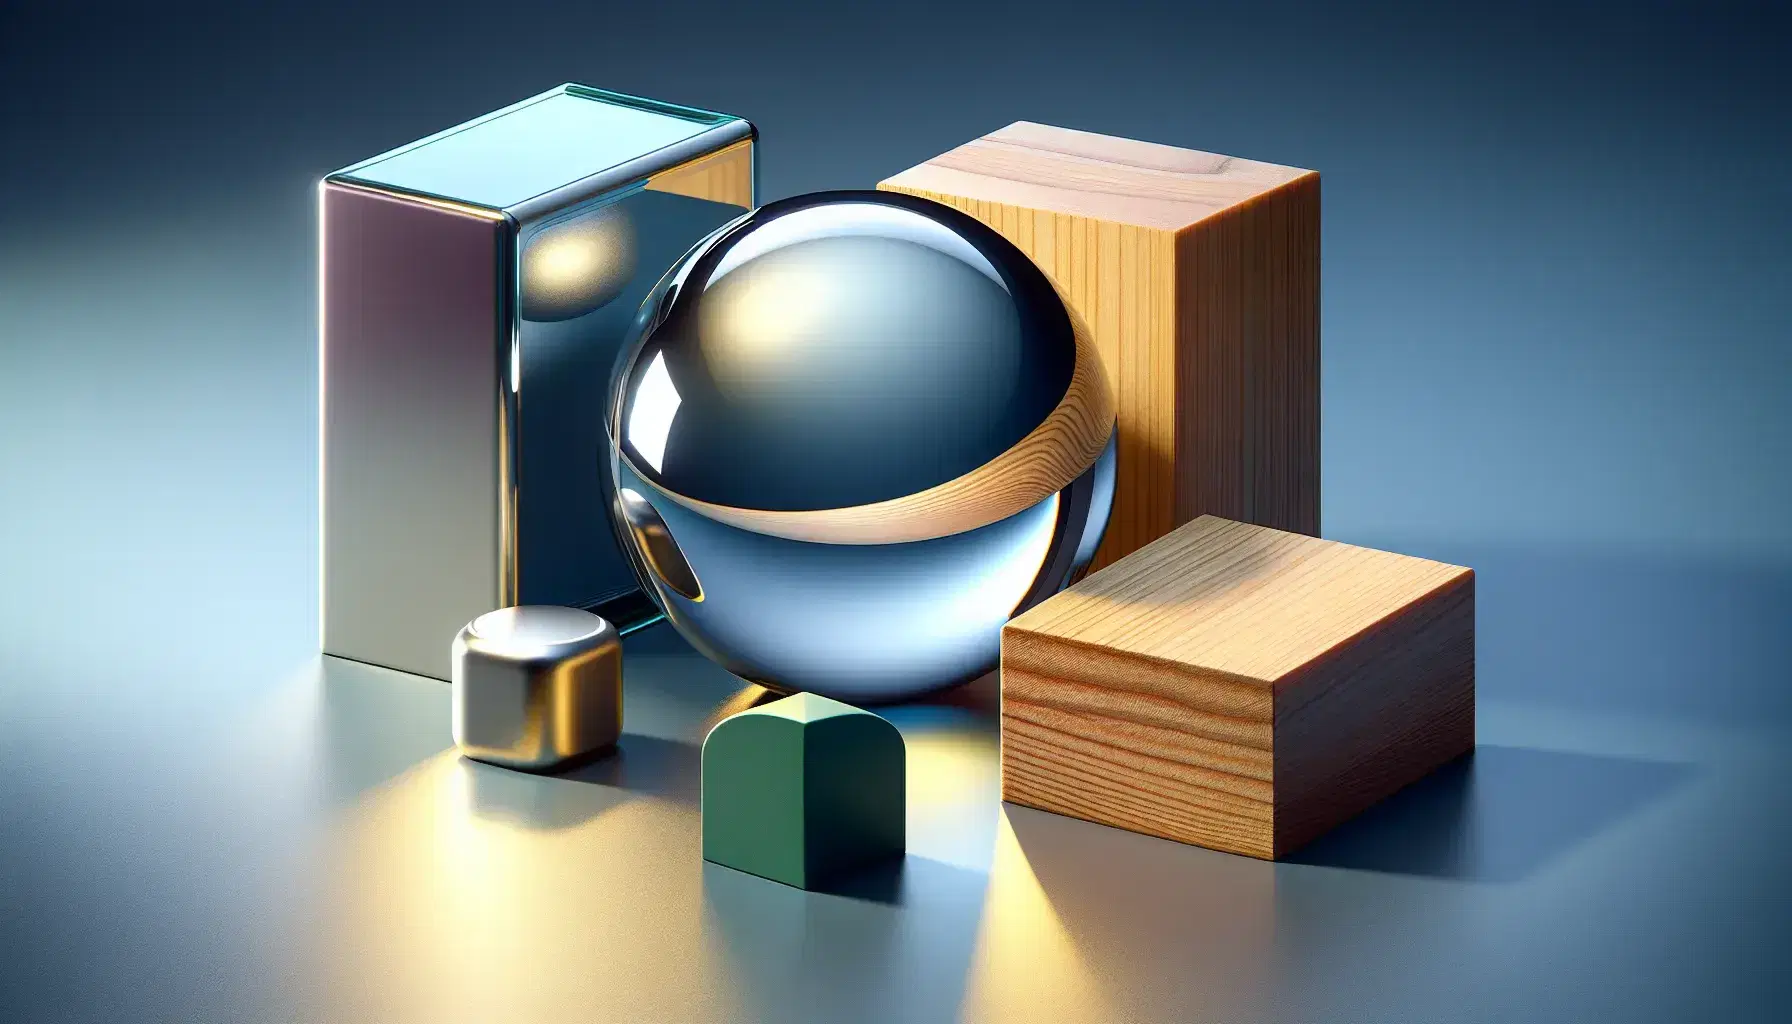 Esfera de vidrio transparente reflejando luz con pieza metálica, bloque de madera, plástico azul y contenedores apilados en fondo, rodeados de fragmentos variados.